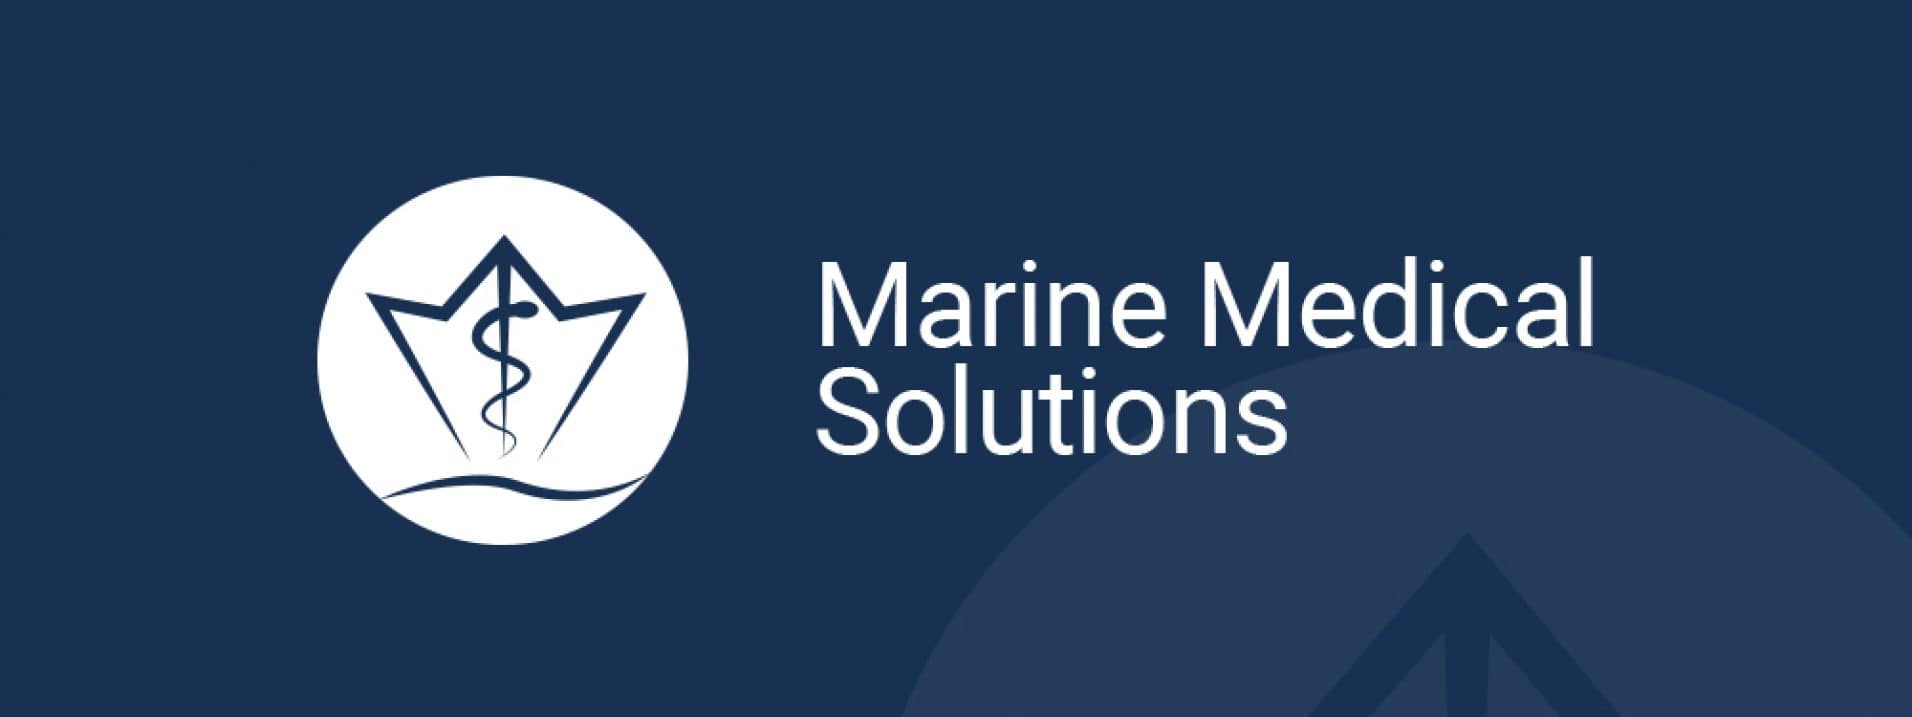 Vorschau des Referenzprojekts „Marine Medical Solutions“ der Berliner Werbeagentur und Internetagentur Dive Designs